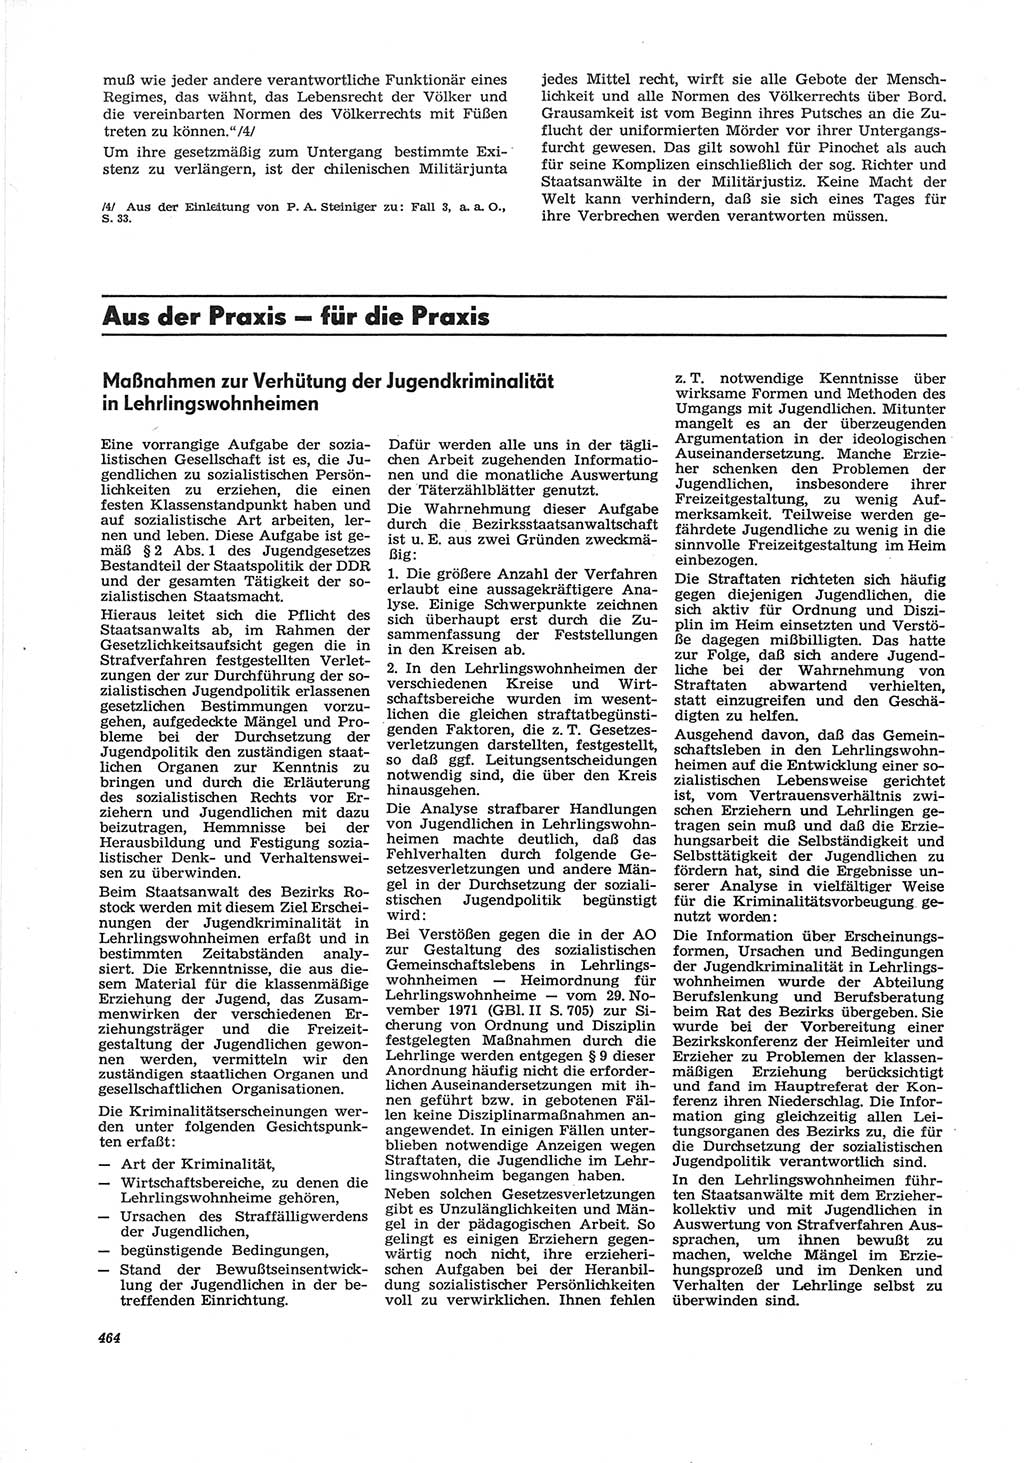 Neue Justiz (NJ), Zeitschrift für Recht und Rechtswissenschaft [Deutsche Demokratische Republik (DDR)], 28. Jahrgang 1974, Seite 464 (NJ DDR 1974, S. 464)